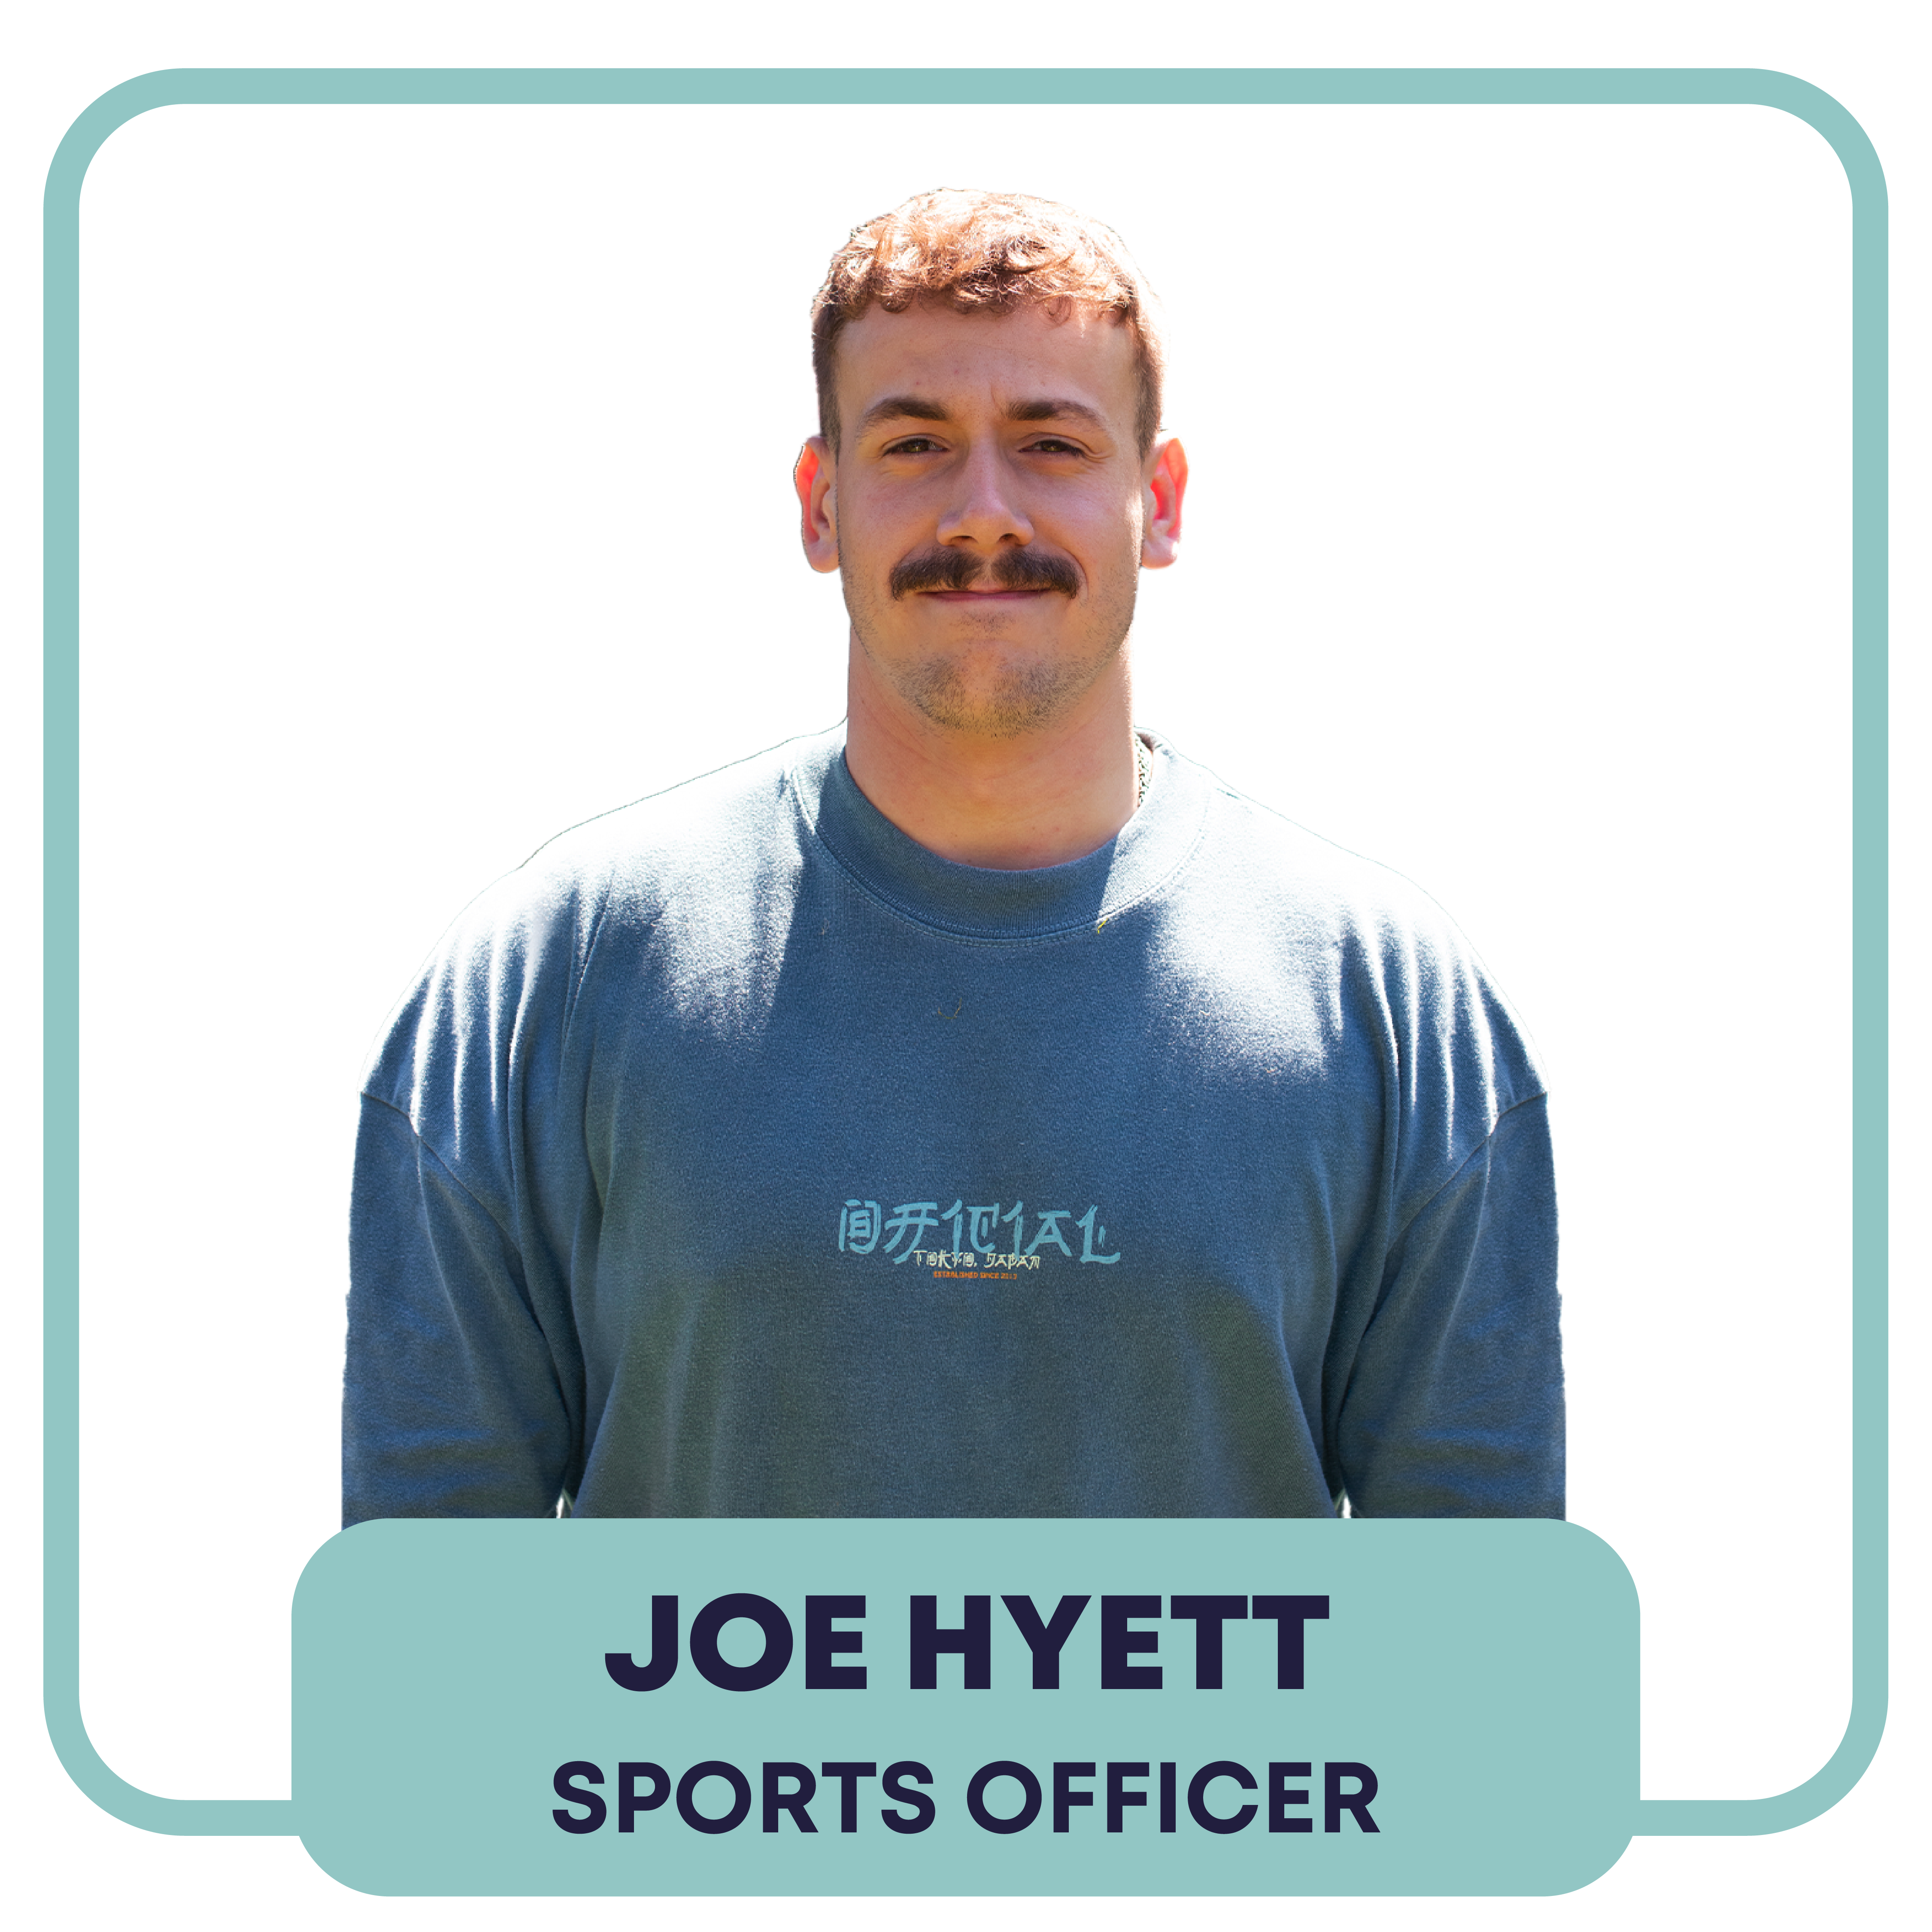 Joe Hyett - Sports Officer - Pronouns: He/ Him